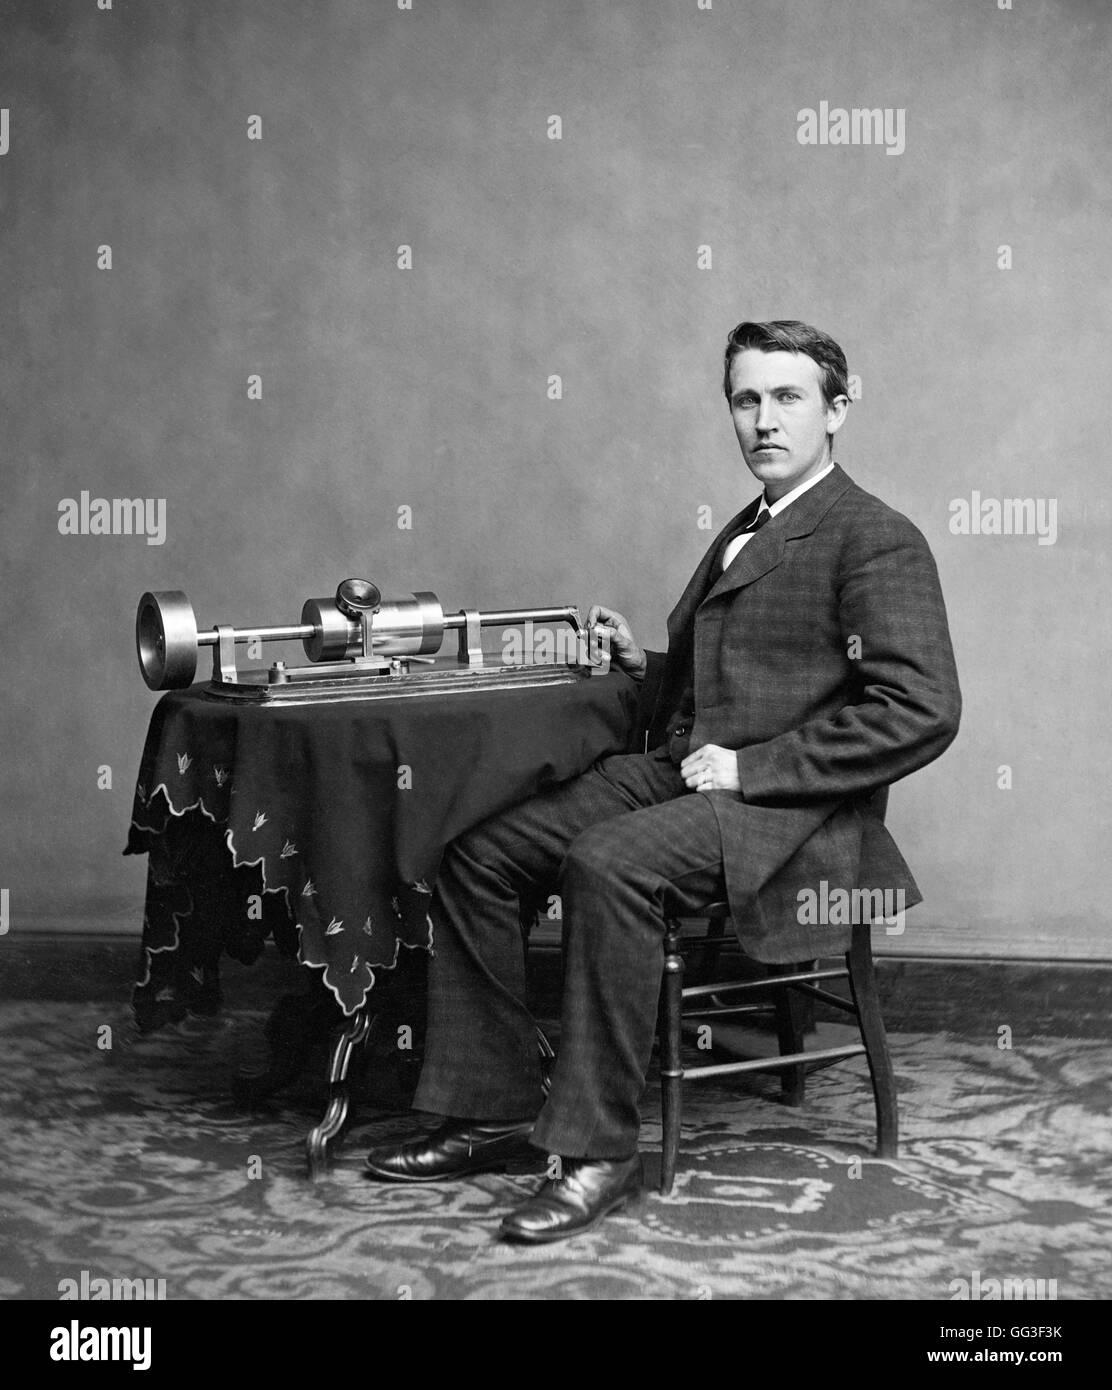 Thomas Edison. Portrait de l'inventeur et homme d'affaires américain, Thomas Alva Edison (1847-1931), avec son phonographe. Portrait c.1878. Banque D'Images